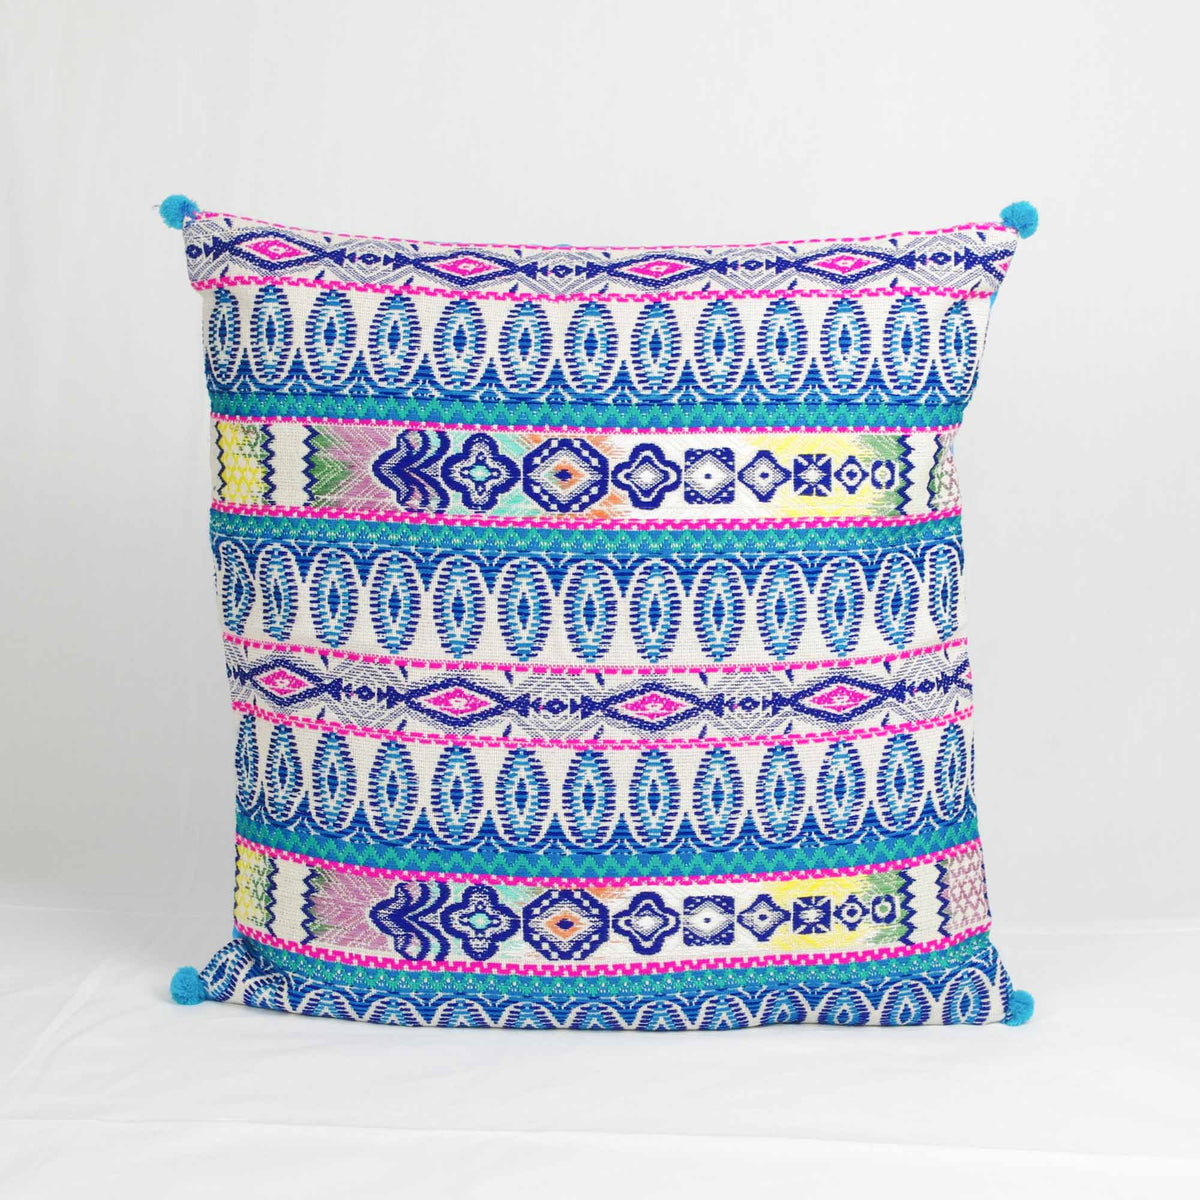 Bohemian Handloom Cotton Cushion Cover - Blue